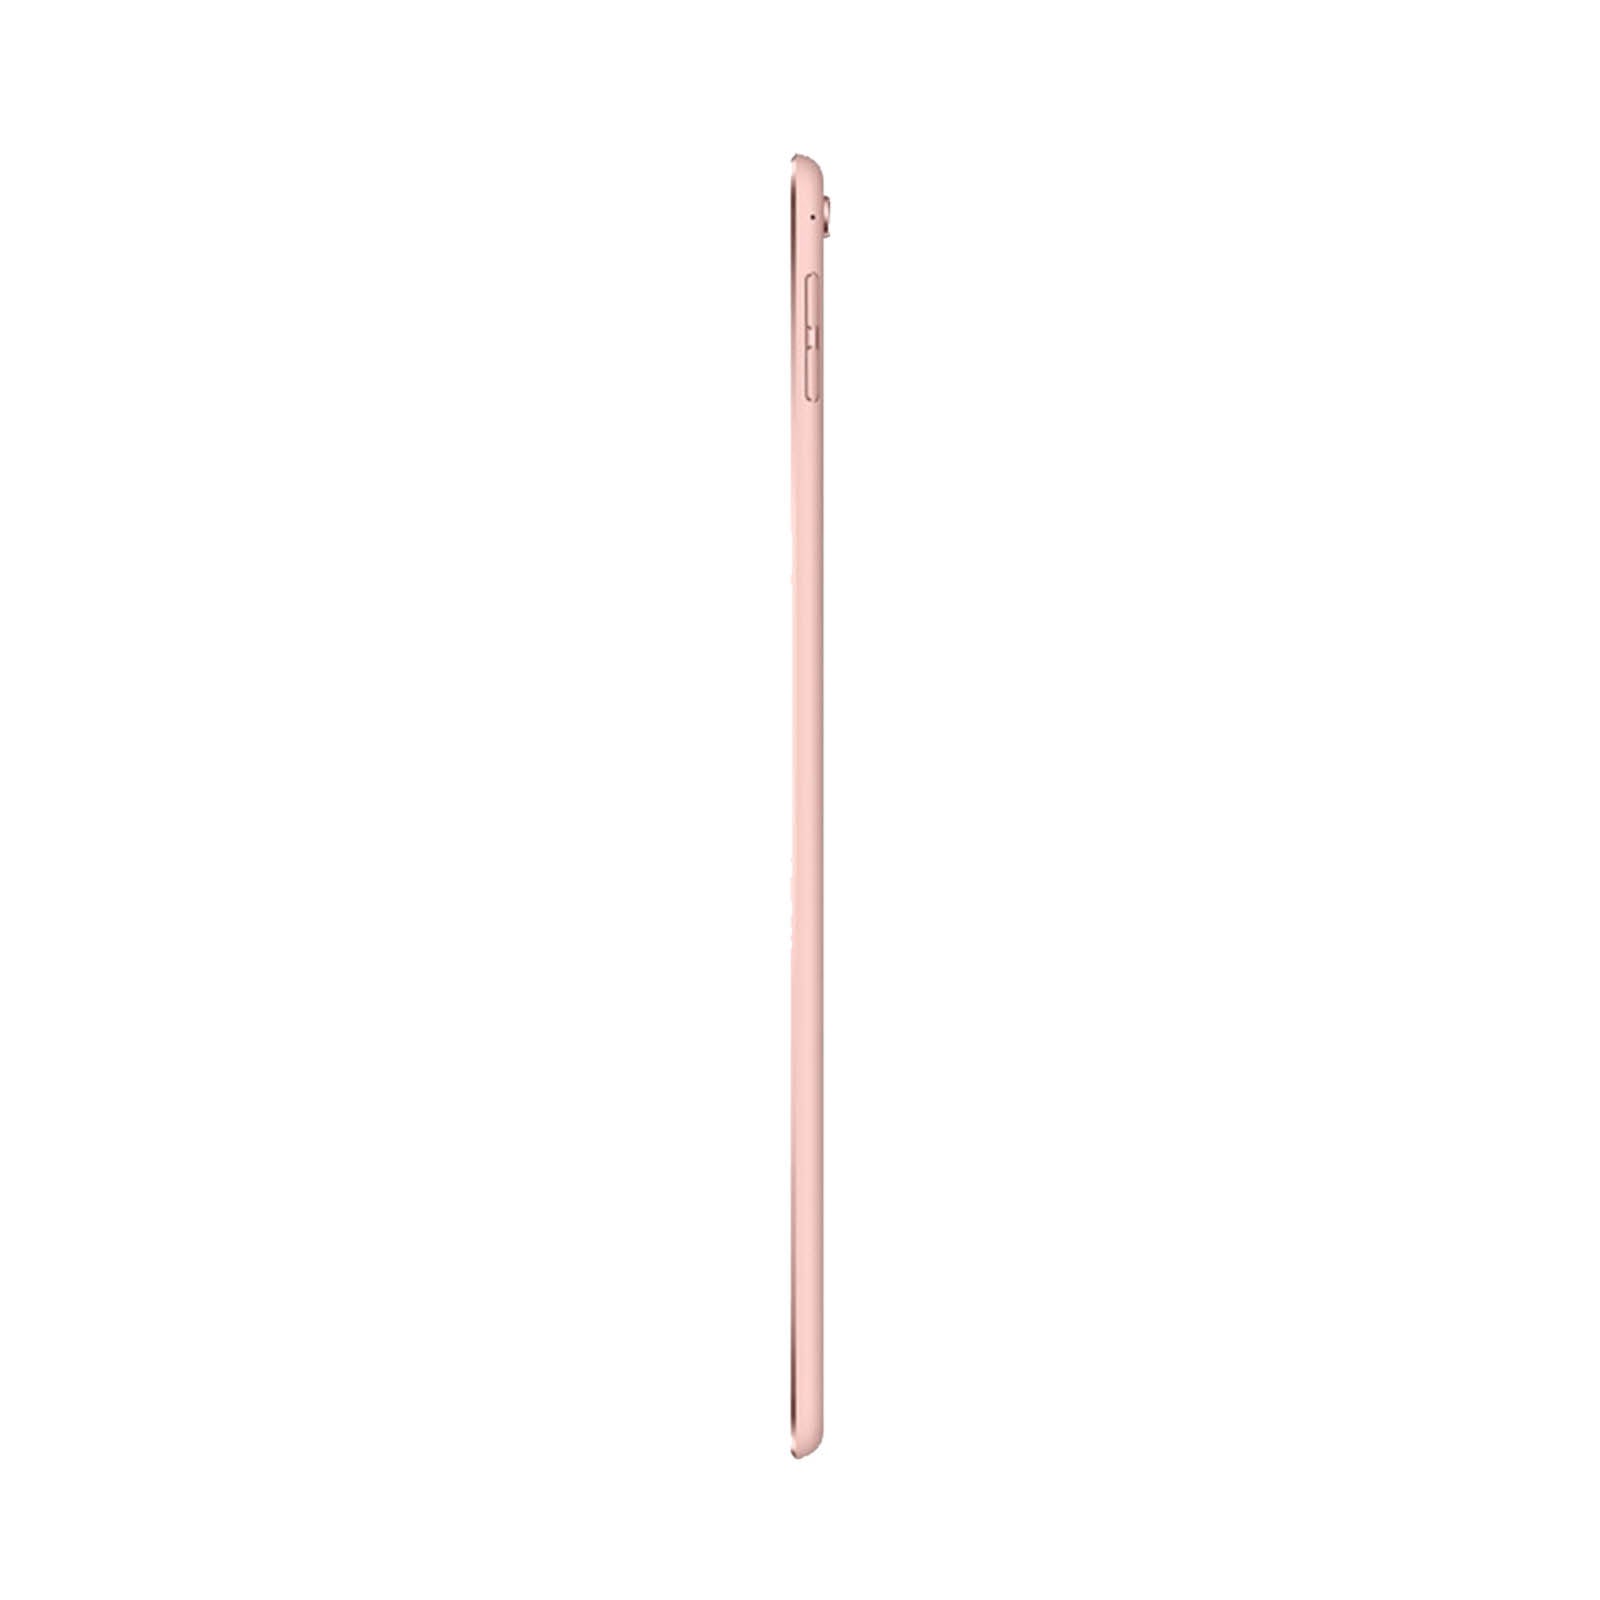 Apple iPad Pro 9.7" 32GB Rose Gold Good - WiFi